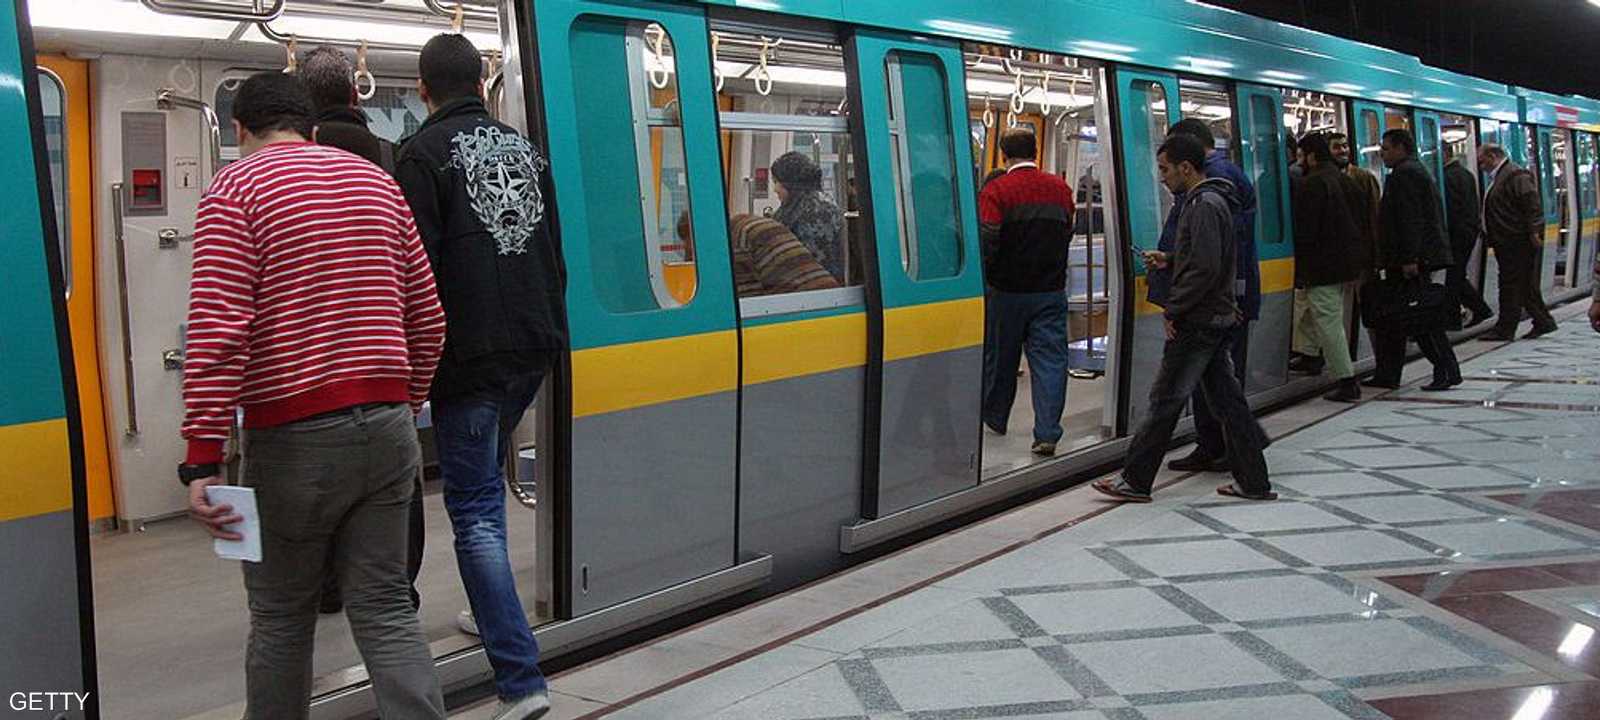 عدد الركاب الذين يخدمهم مترو الأنفاق هو 3.5 مليون راكب